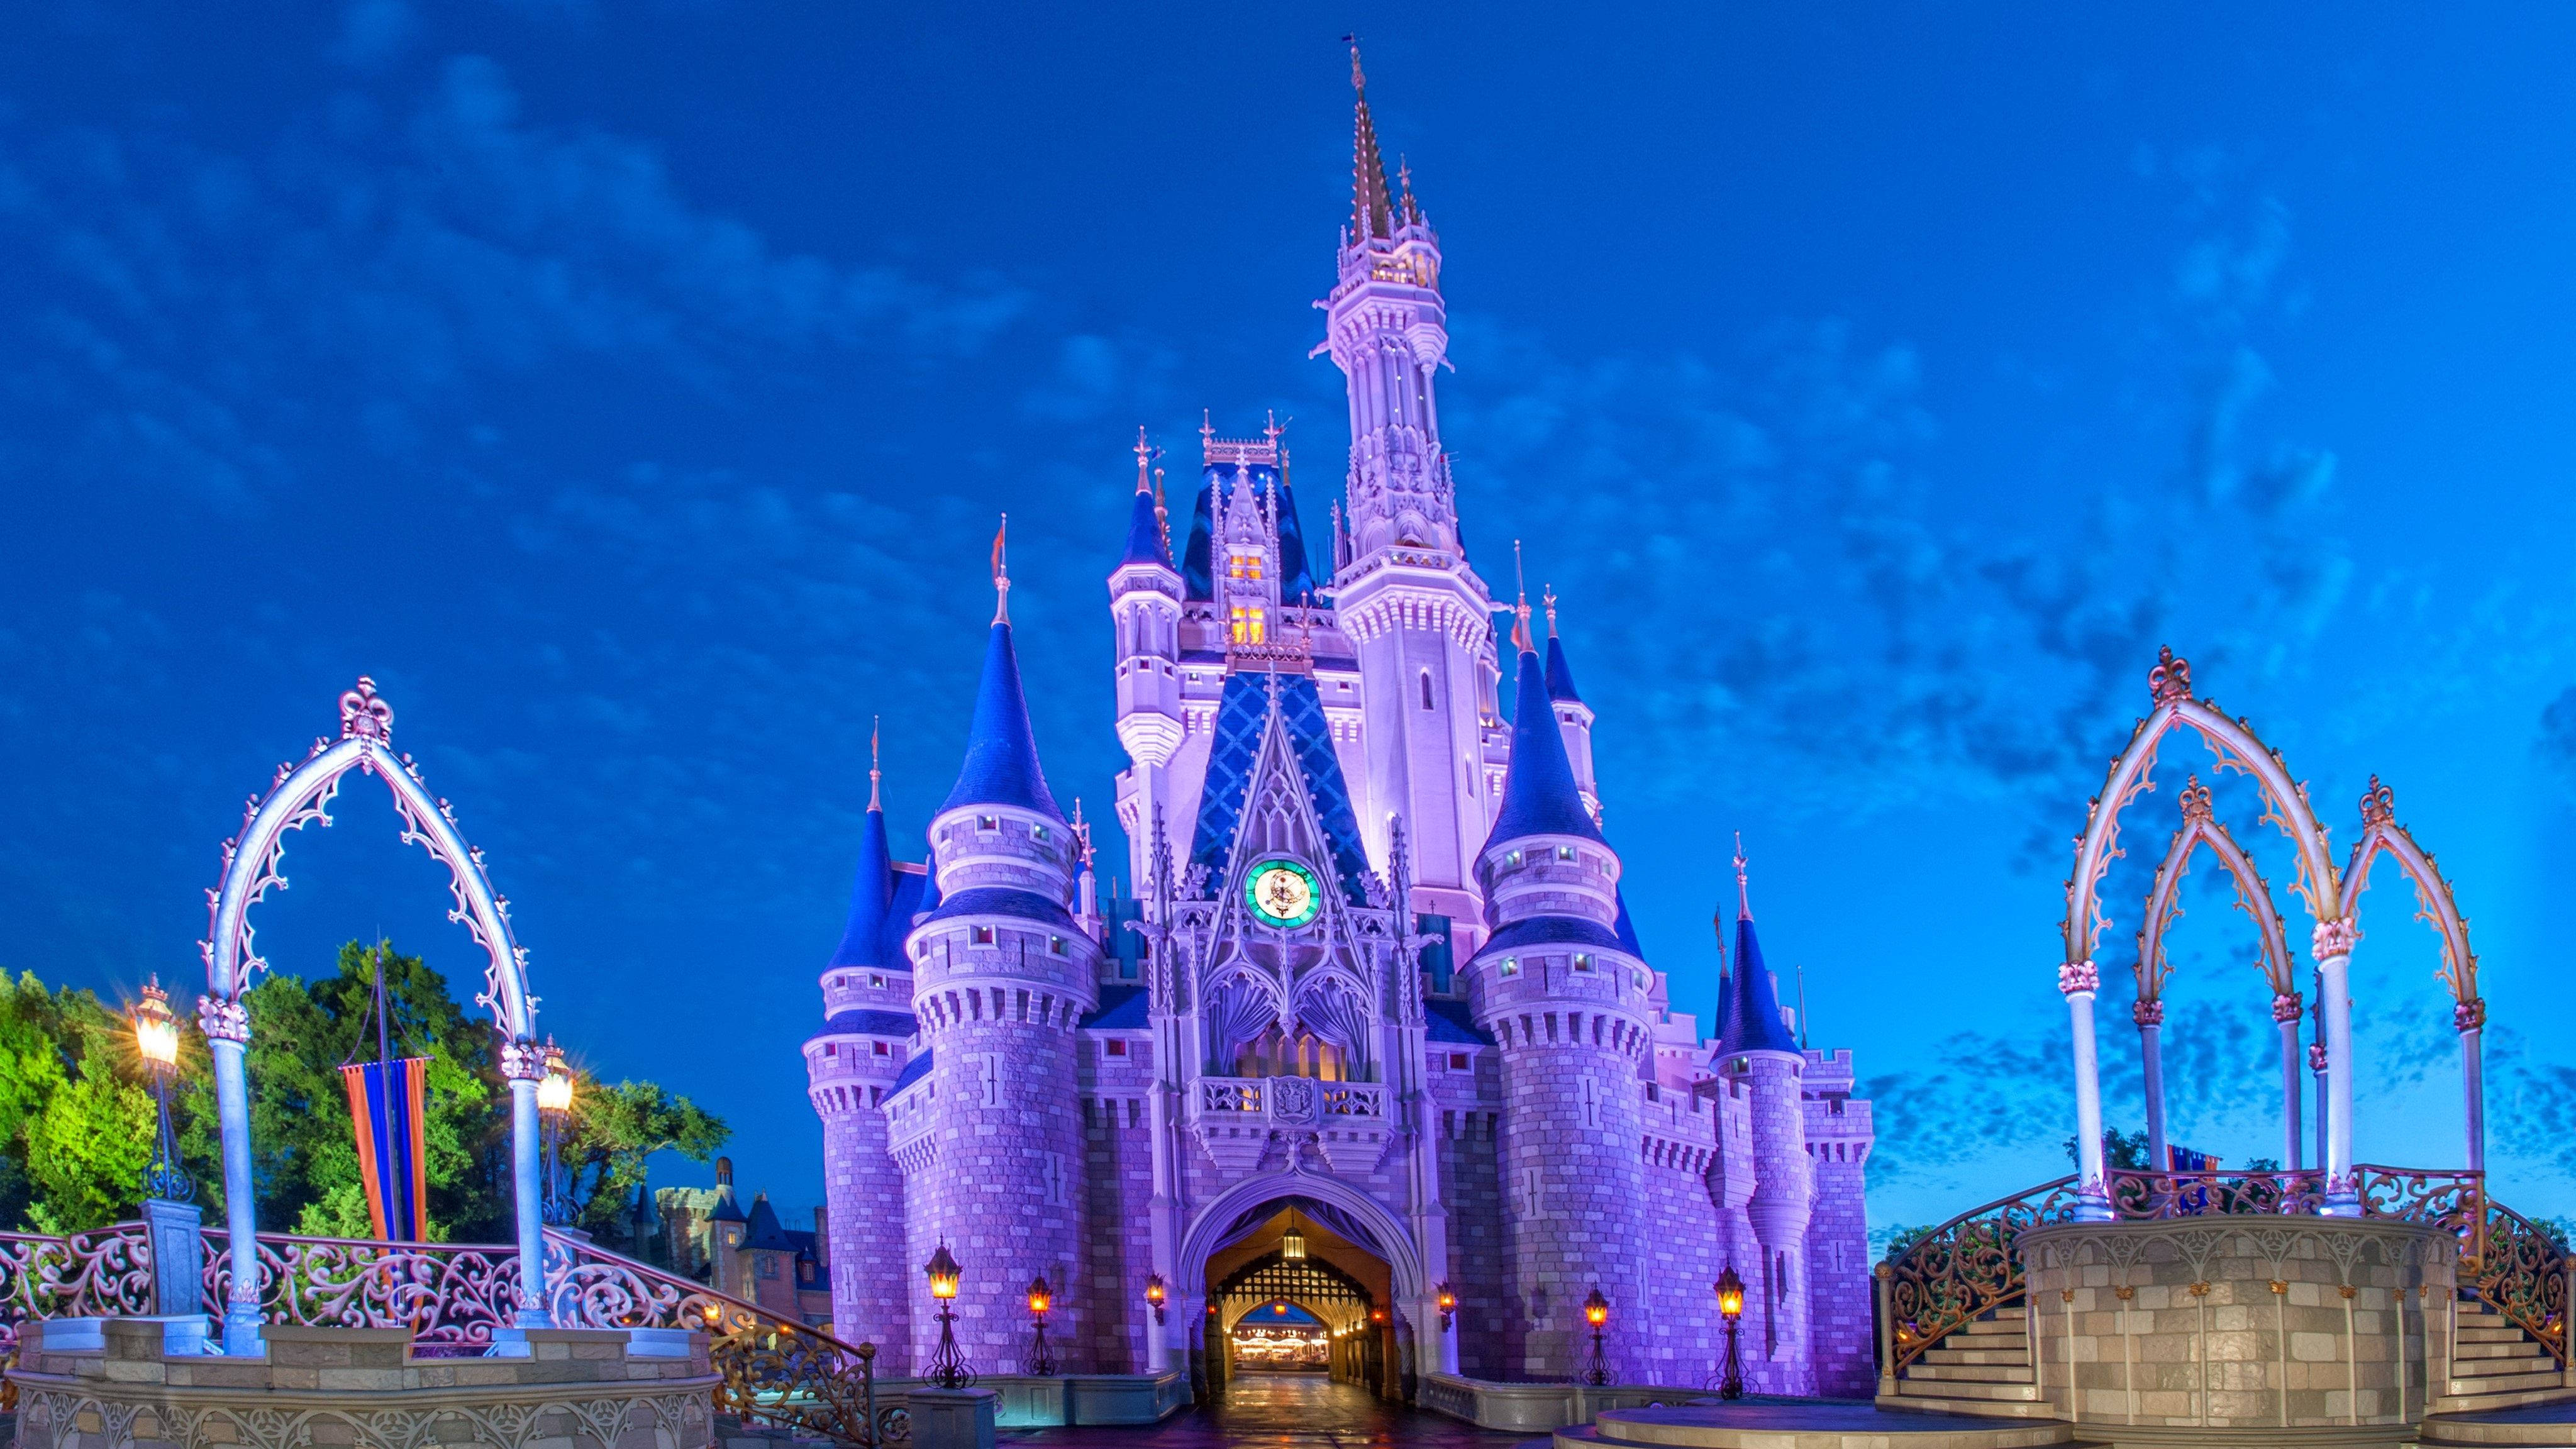 Disney World's Cinderella Castle Background